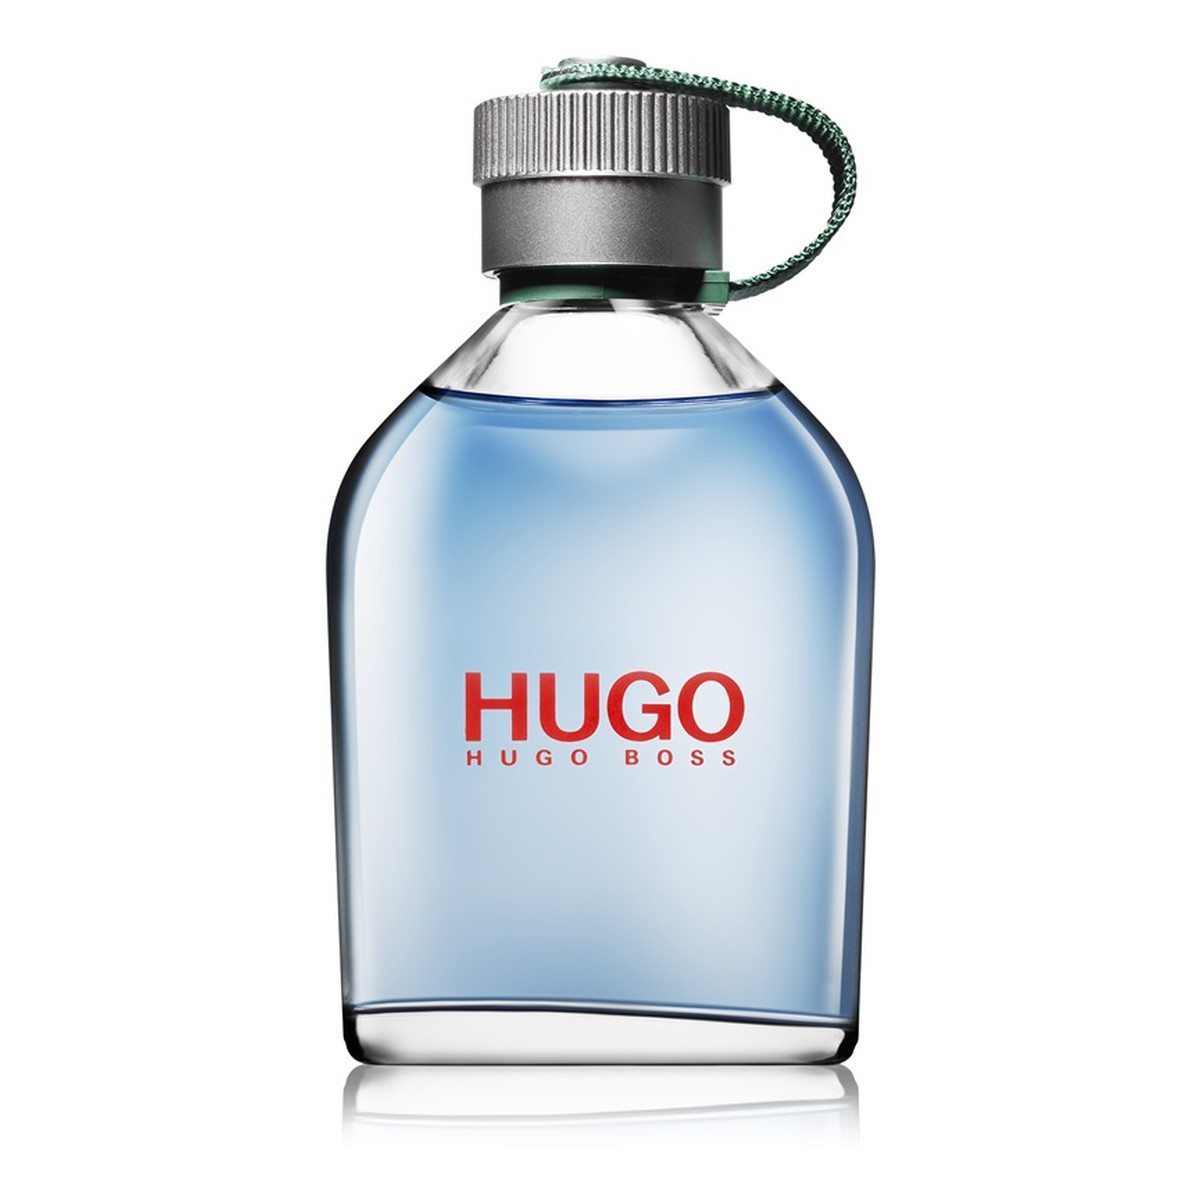 Hugo Boss Hugo Woda toaletowa dla mężczyzn 125ml